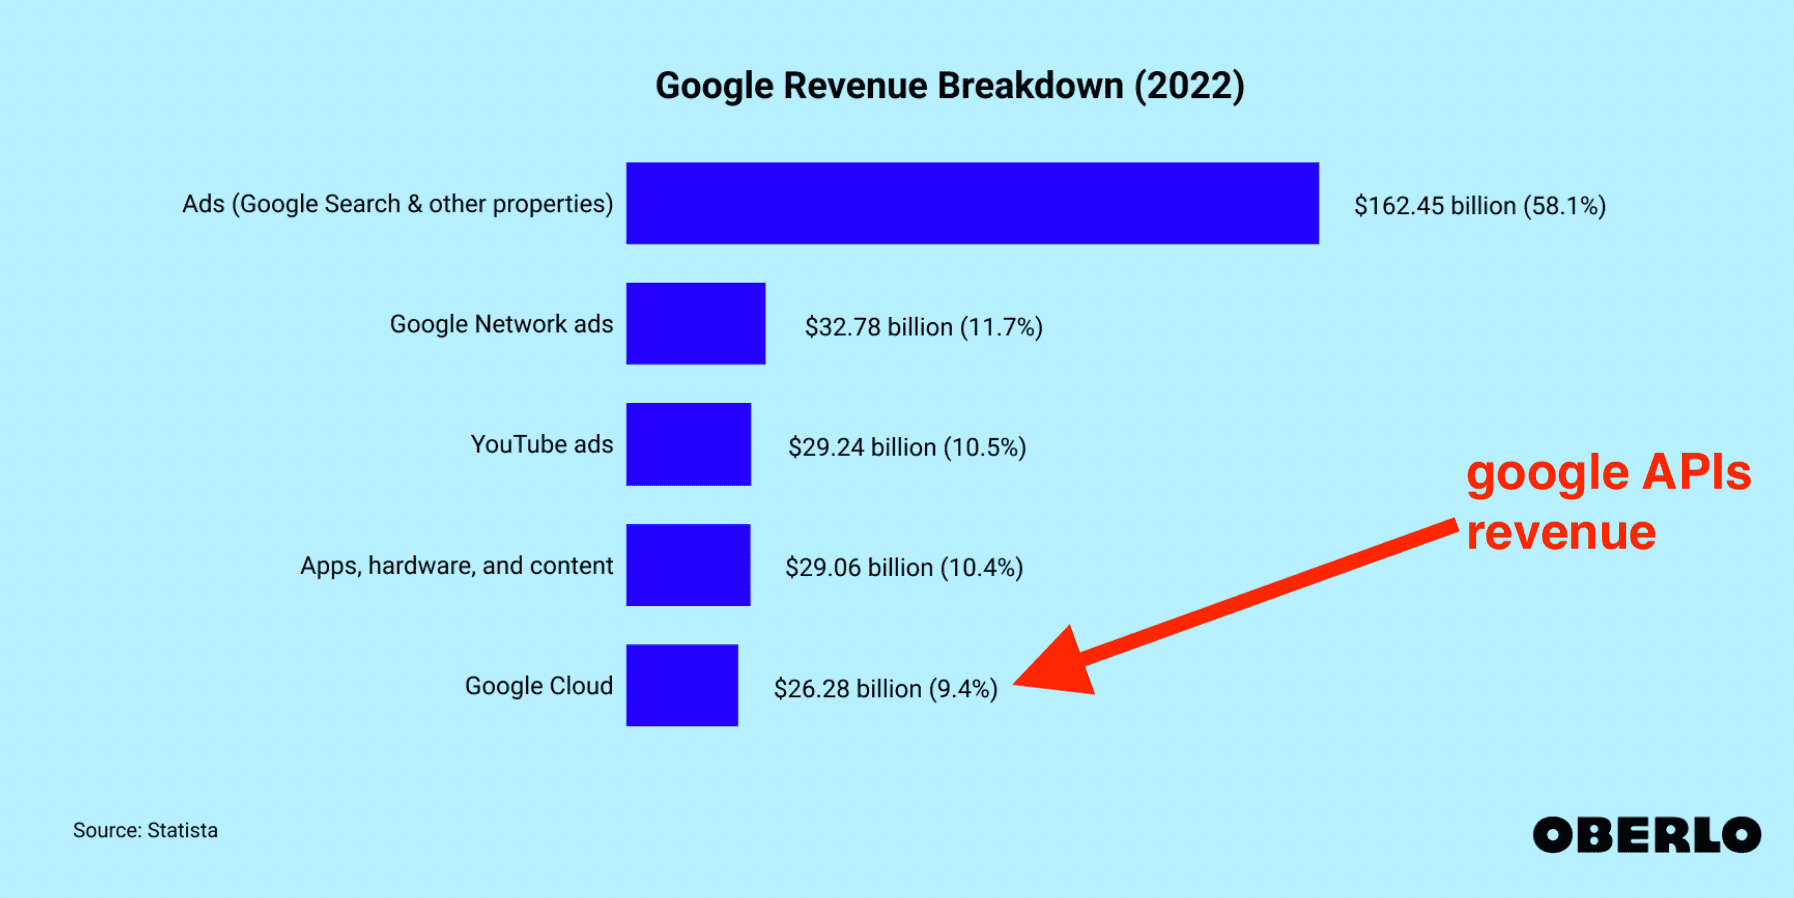 google revenues per acticity 2022 - image17.png